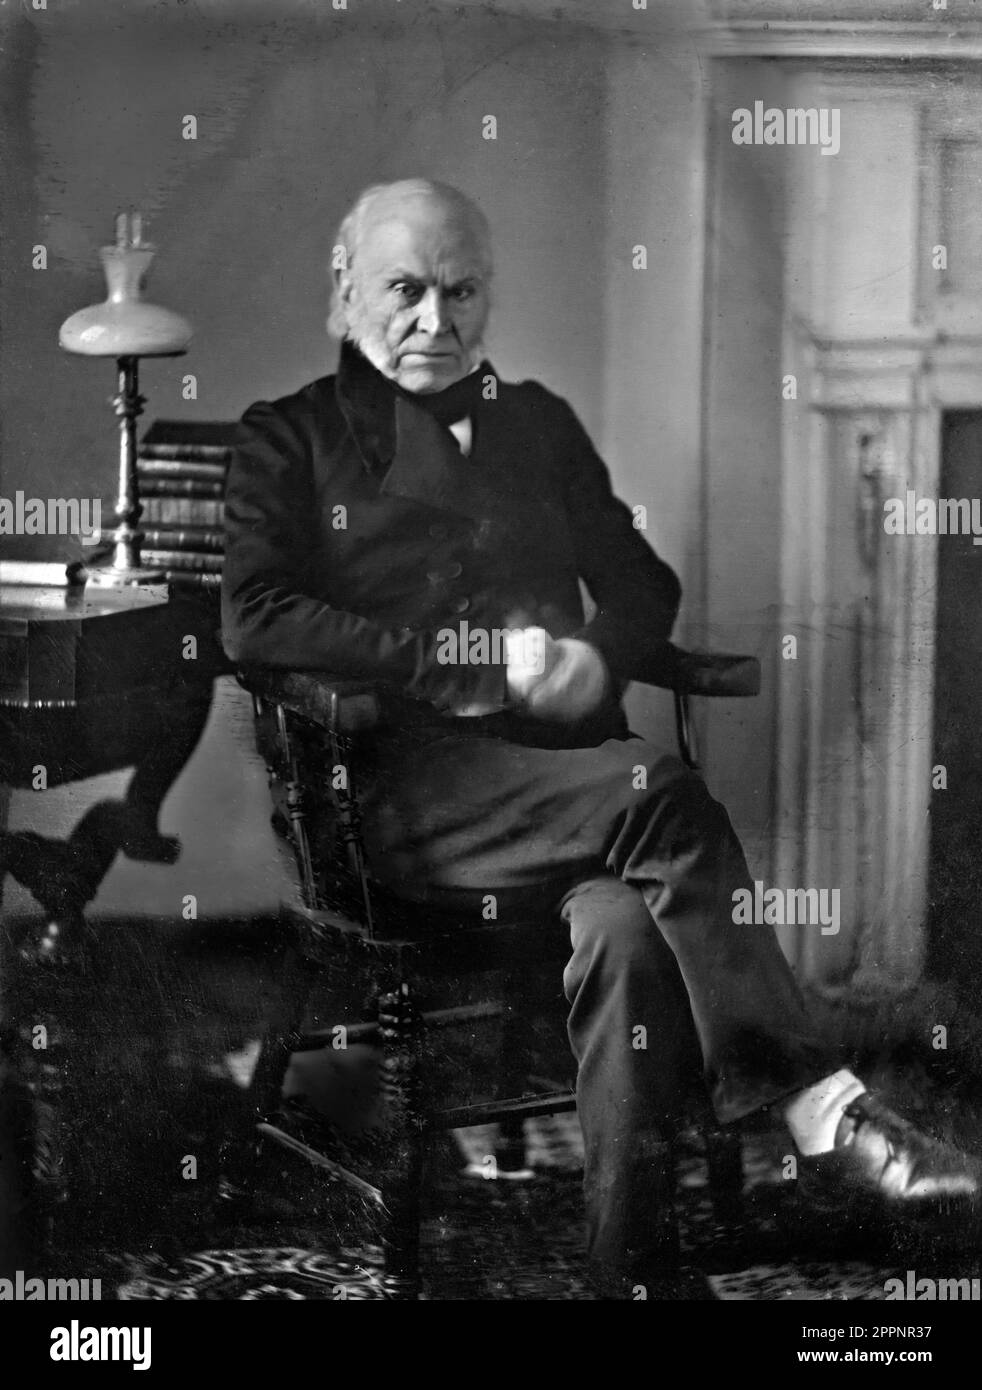 John Quincy Adams (1767-1848), ritratto di Philip Haas, 1843. Questo daguerrotipo è la prima fotografia conosciuta di un presidente americano. Foto Stock